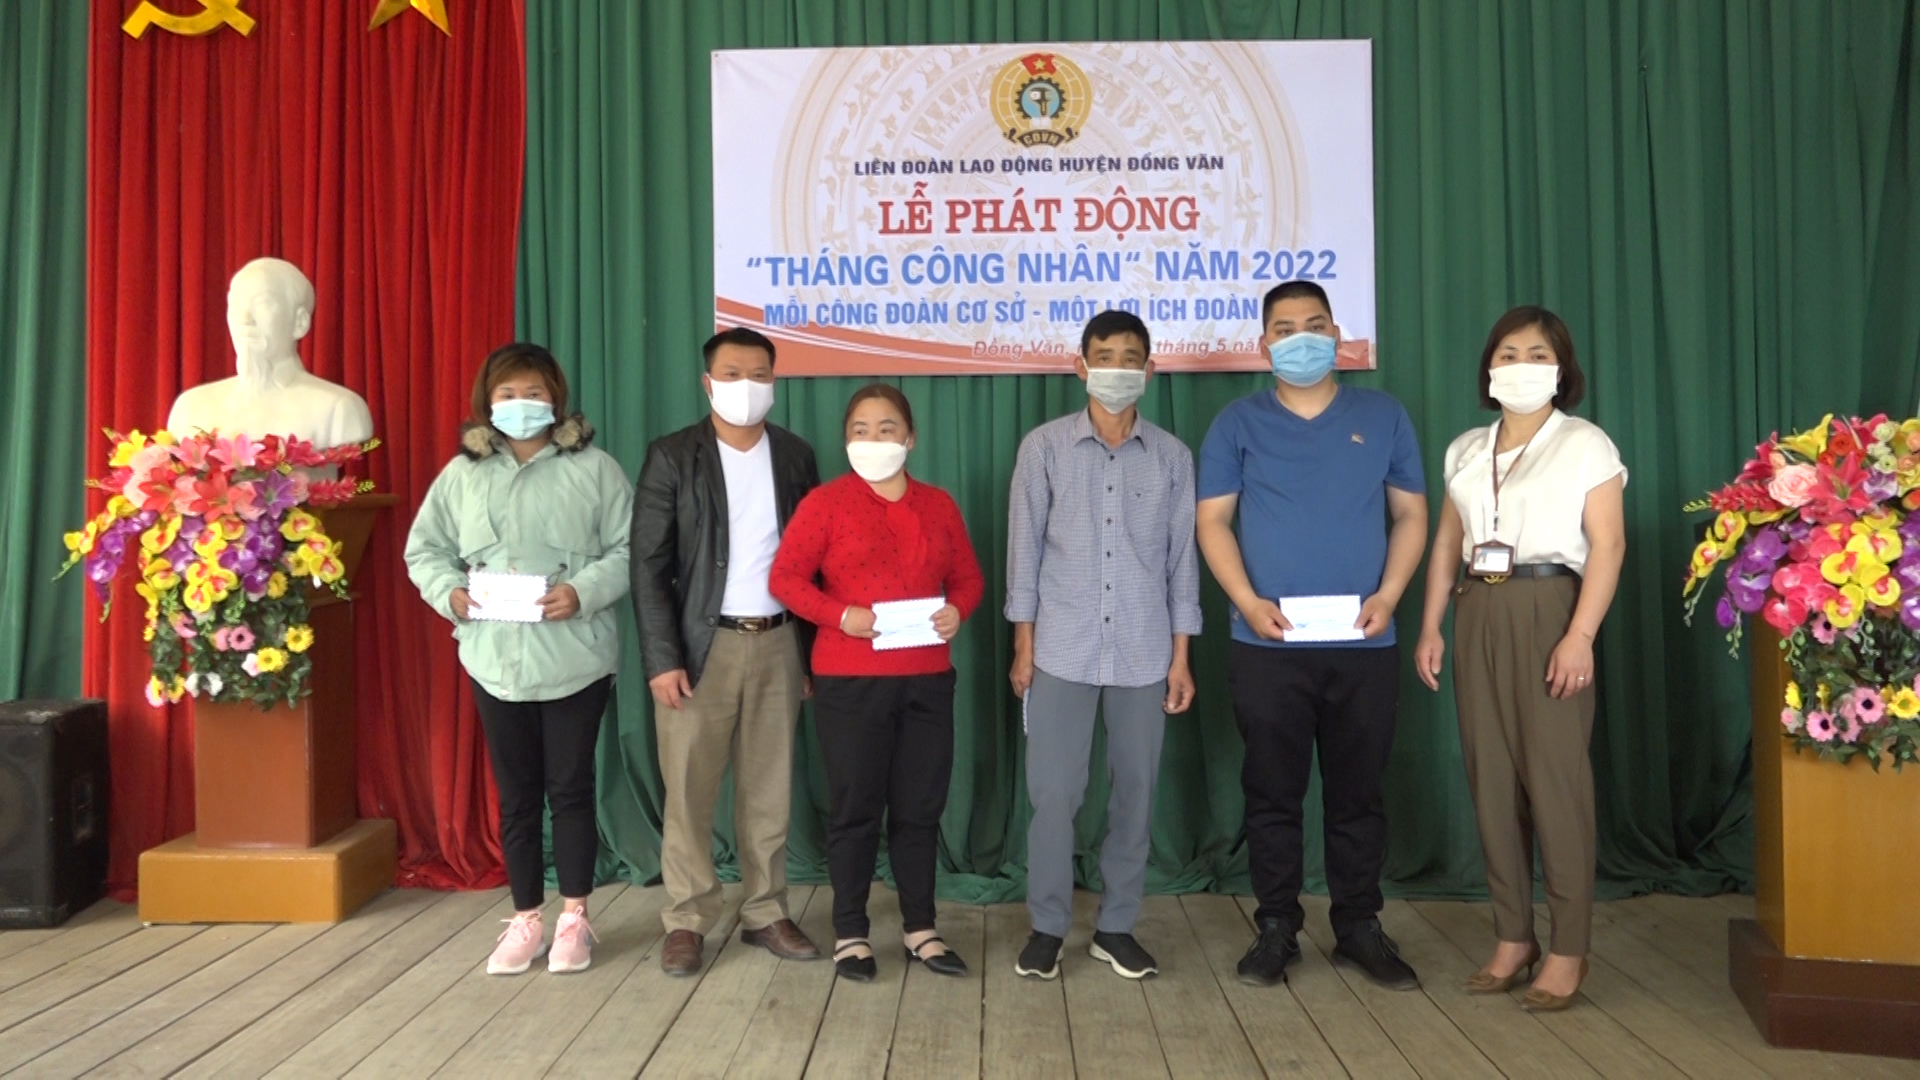 Liên đoàn Lao động huyện Đồng Văn tổ chức Lễ phát động tháng công nhân năm 2022